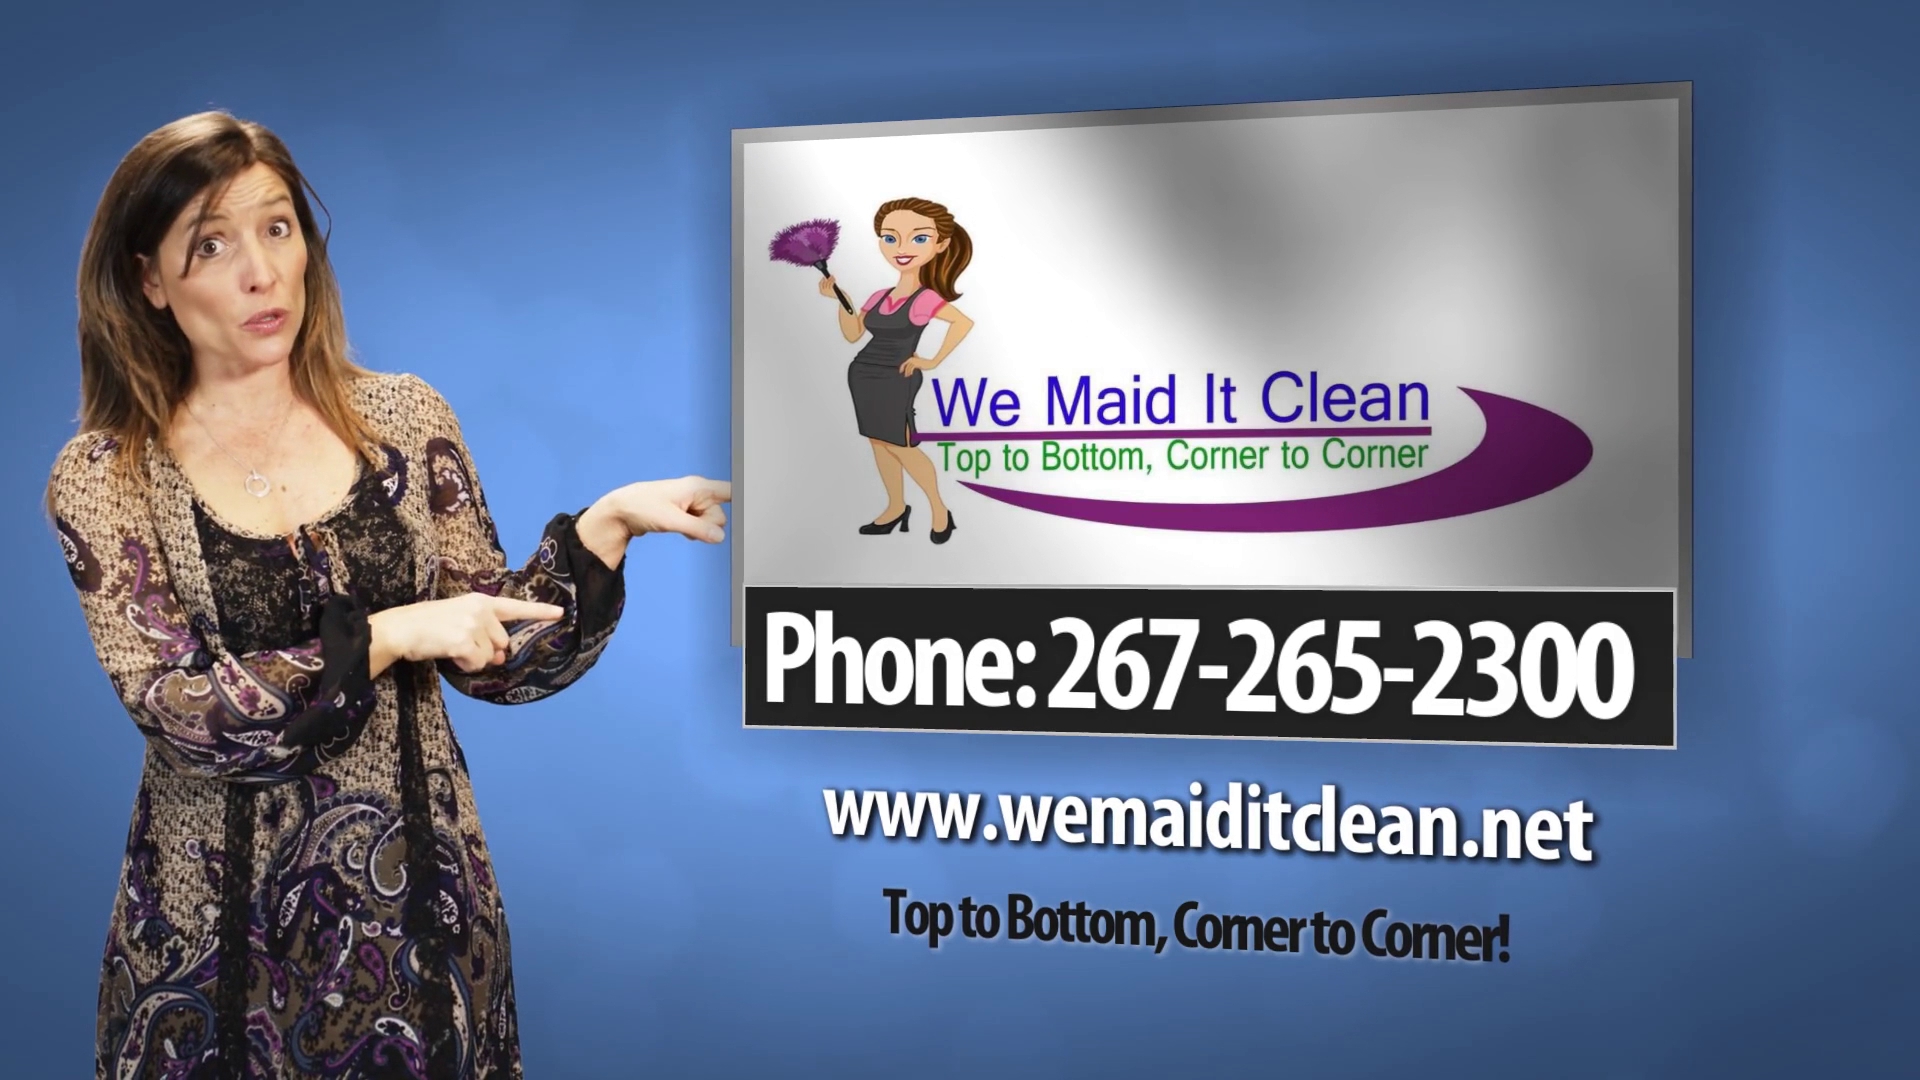 We Maid It Clean, llc